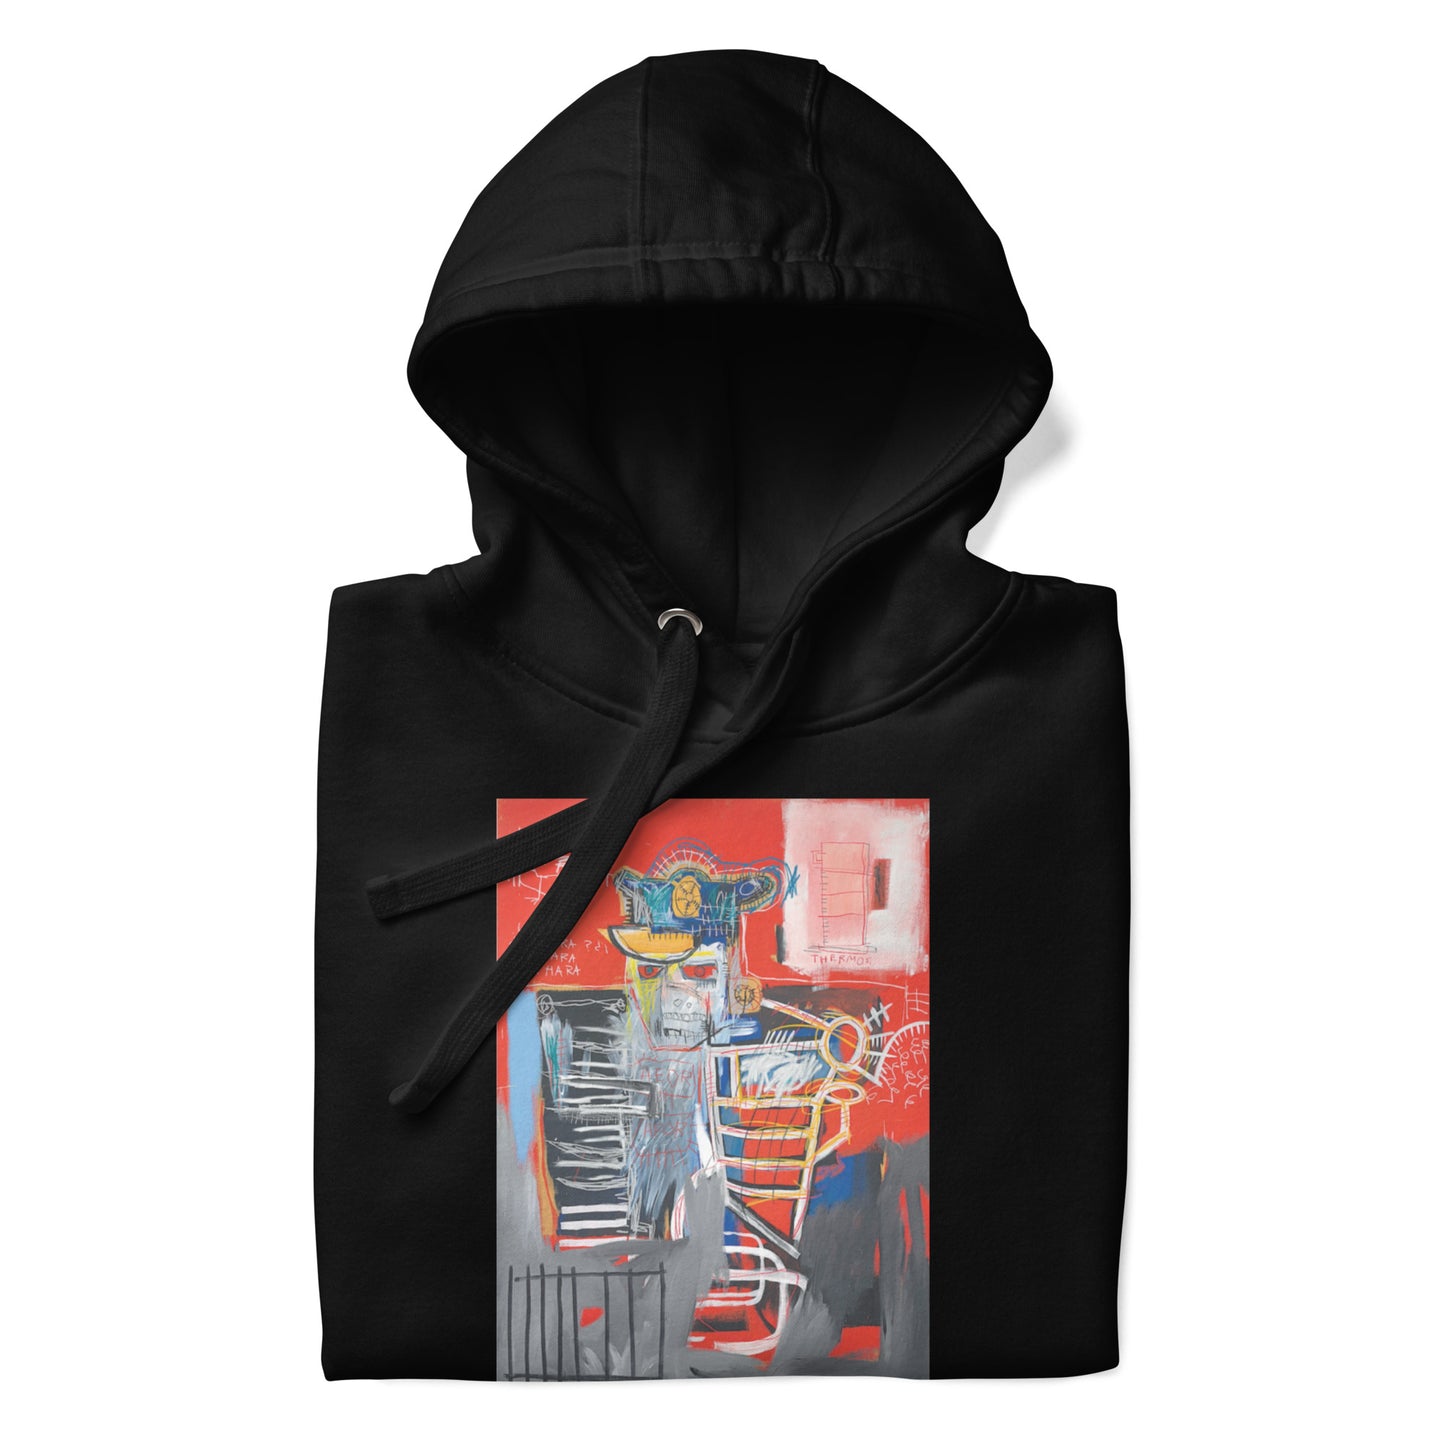 Jean-Michel Basquiat "La Hara" Artwork Printed Premium Streetwear Sweatshirt Hoodie Black